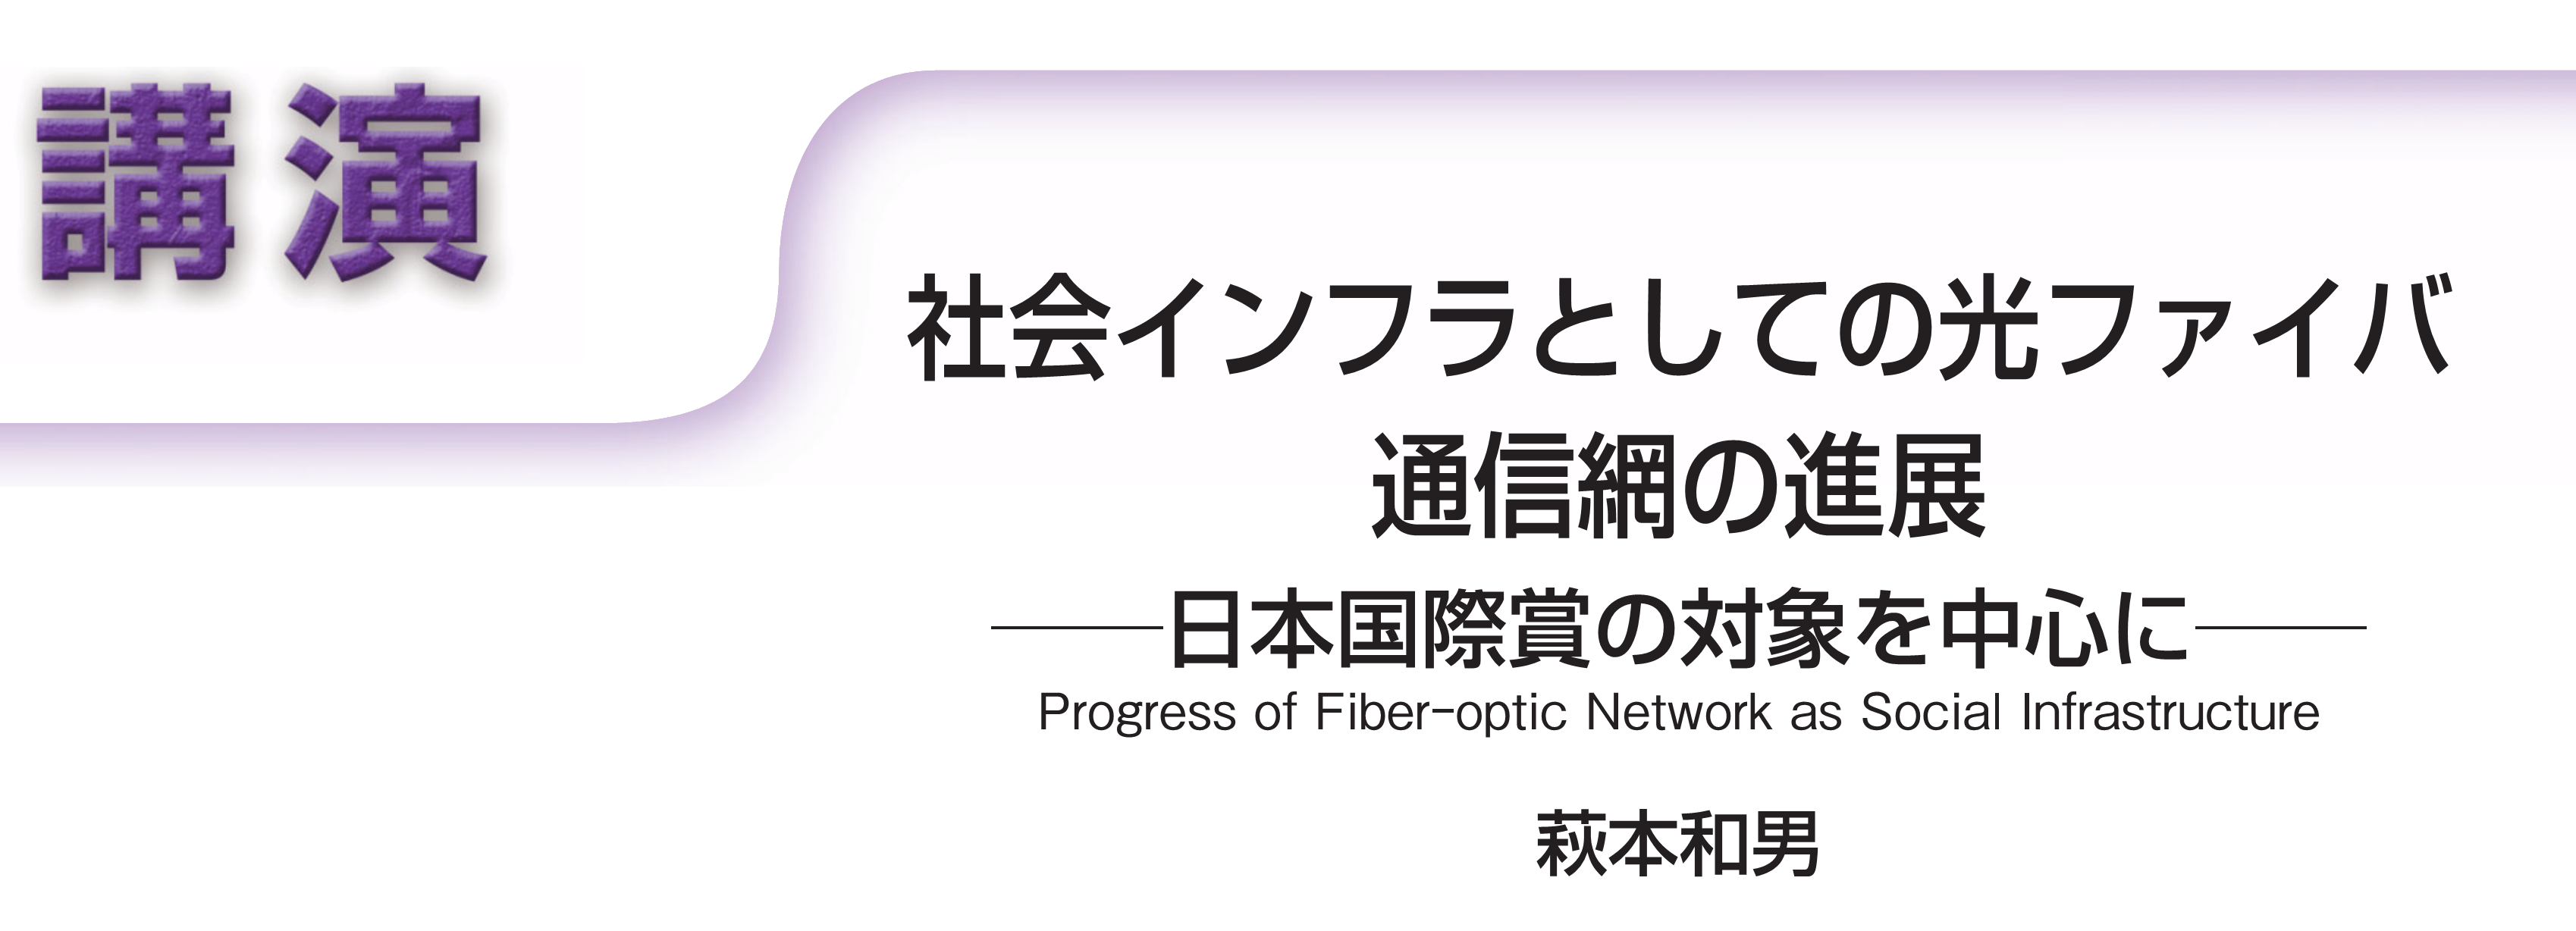 講演　社会インフラとしての光ファイバ通信網の進展――日本国際賞の対象を中心に―― Progress of Fiber-optic Network as Social Infrastructure　萩本和男